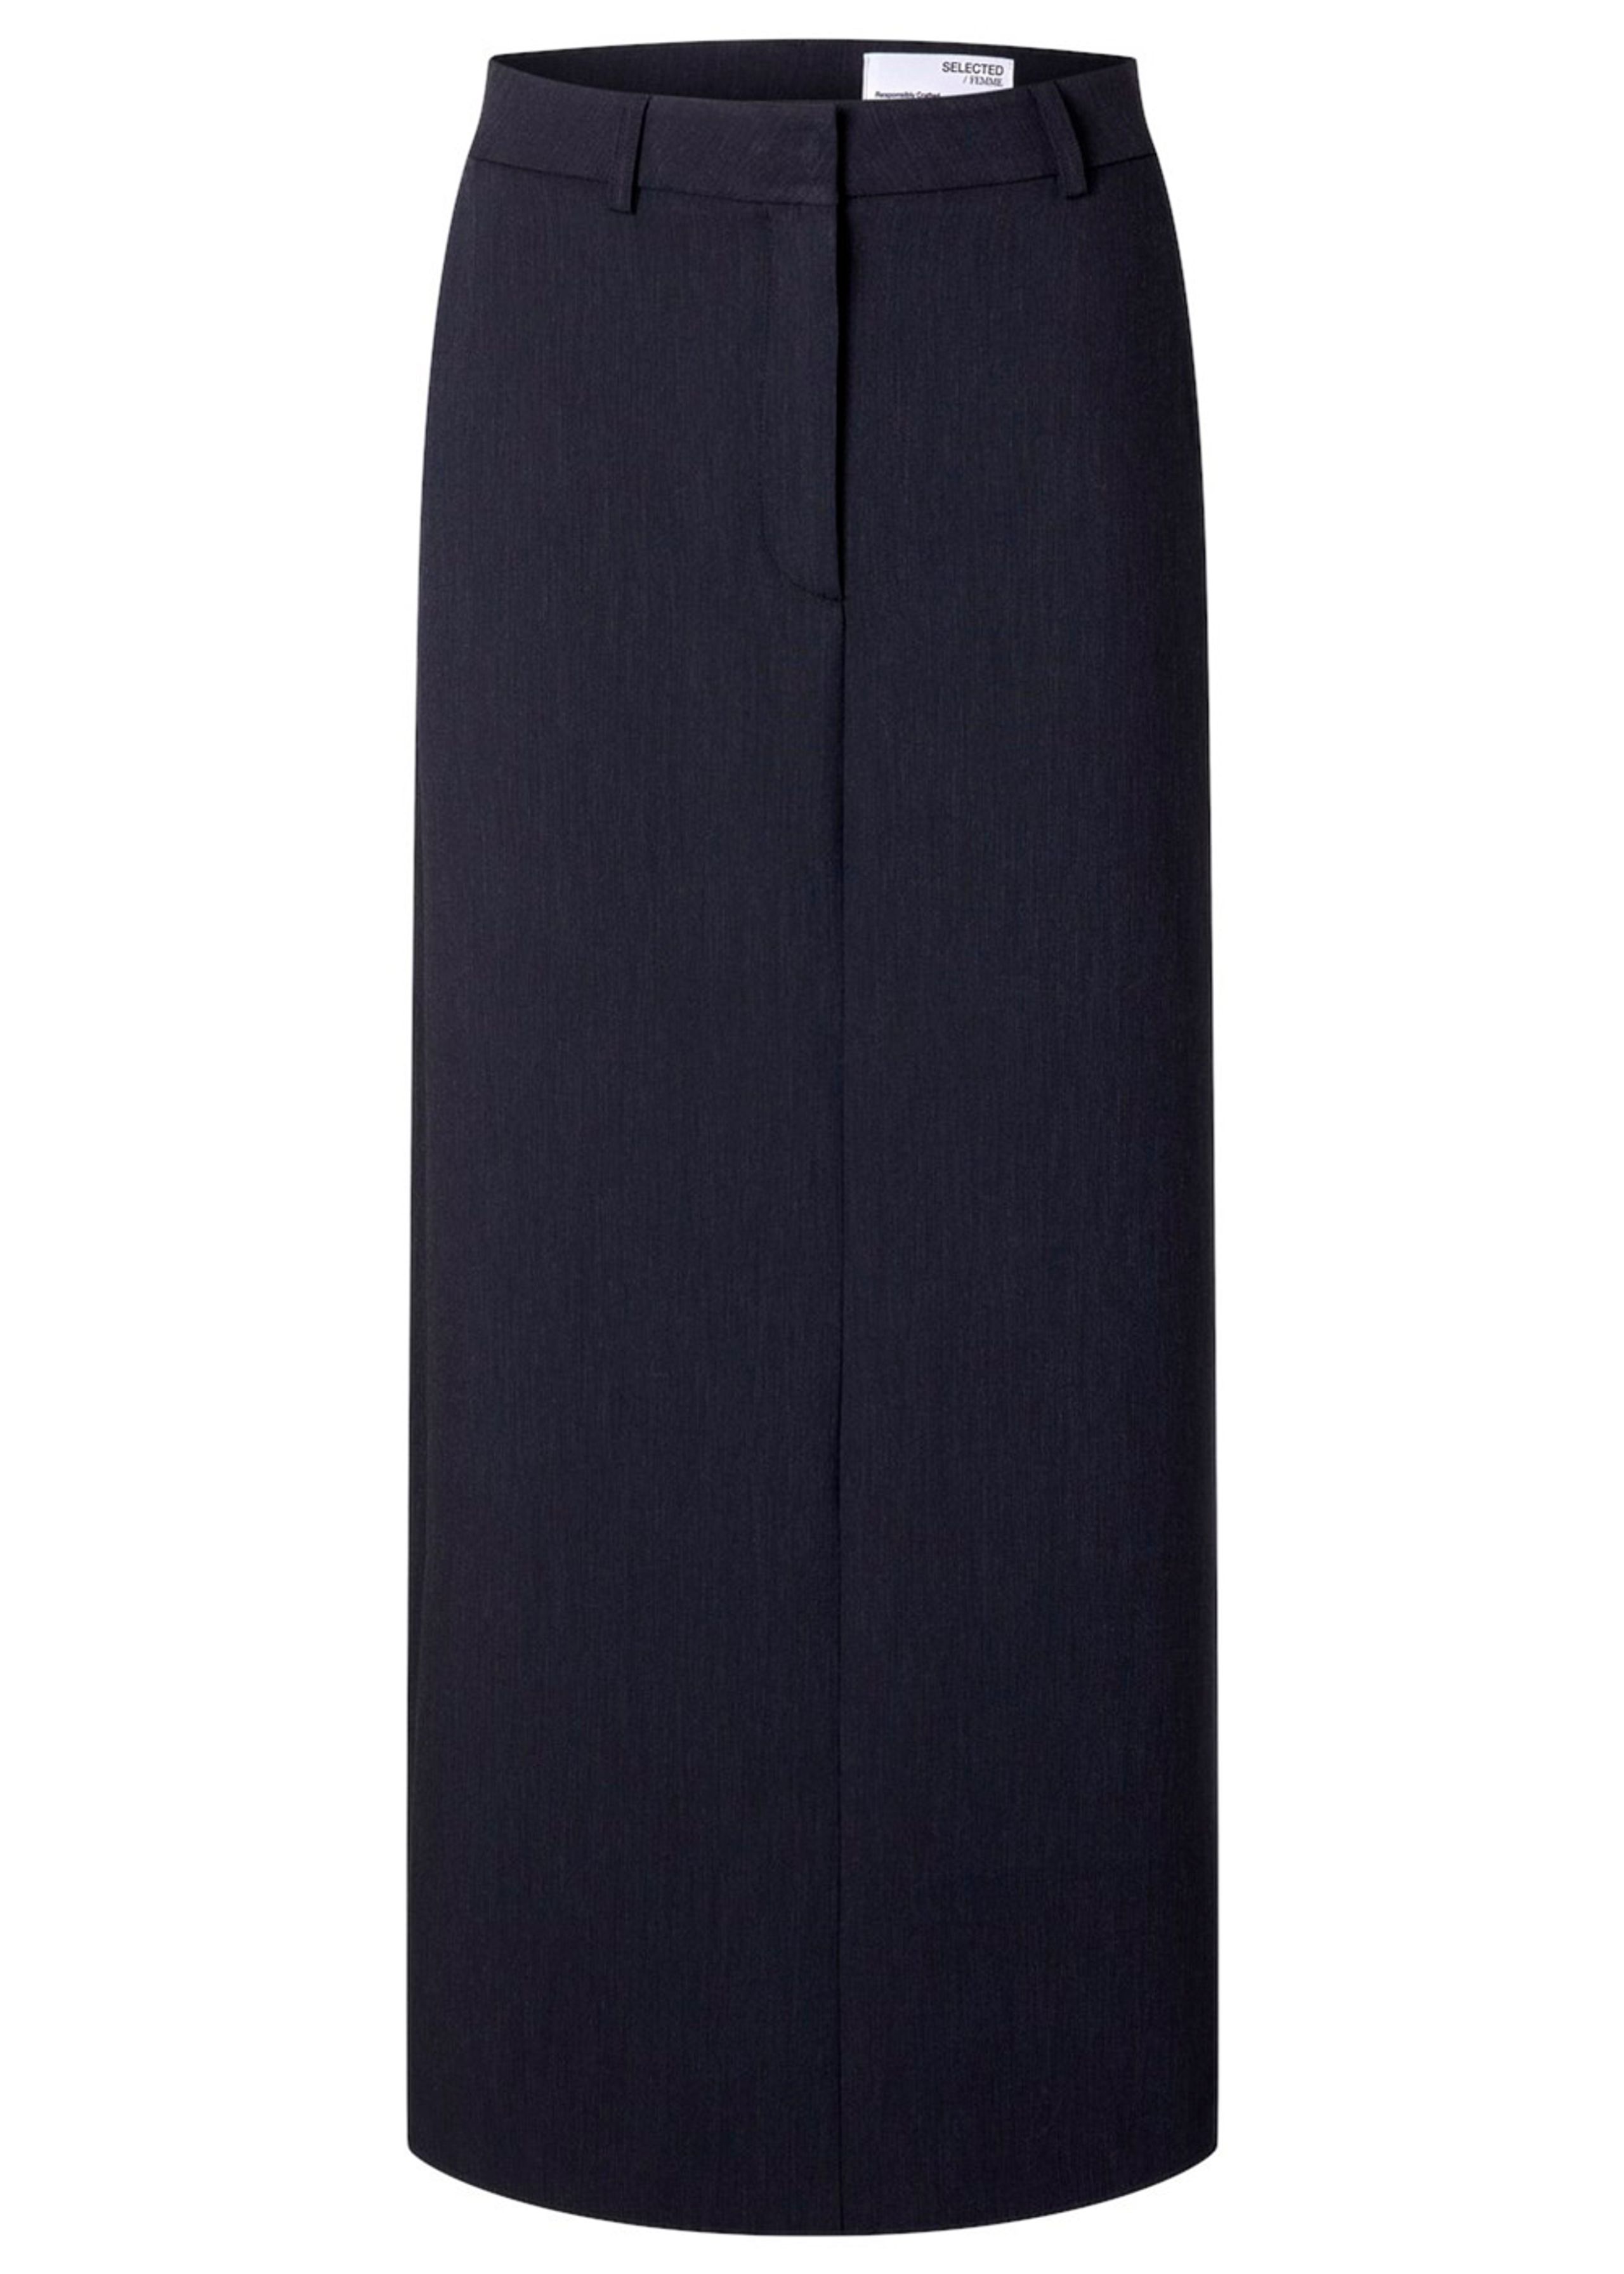 Selected Femme - Rok - SLFRita HW Long Skirt DSM - Dark Sapphire Melange